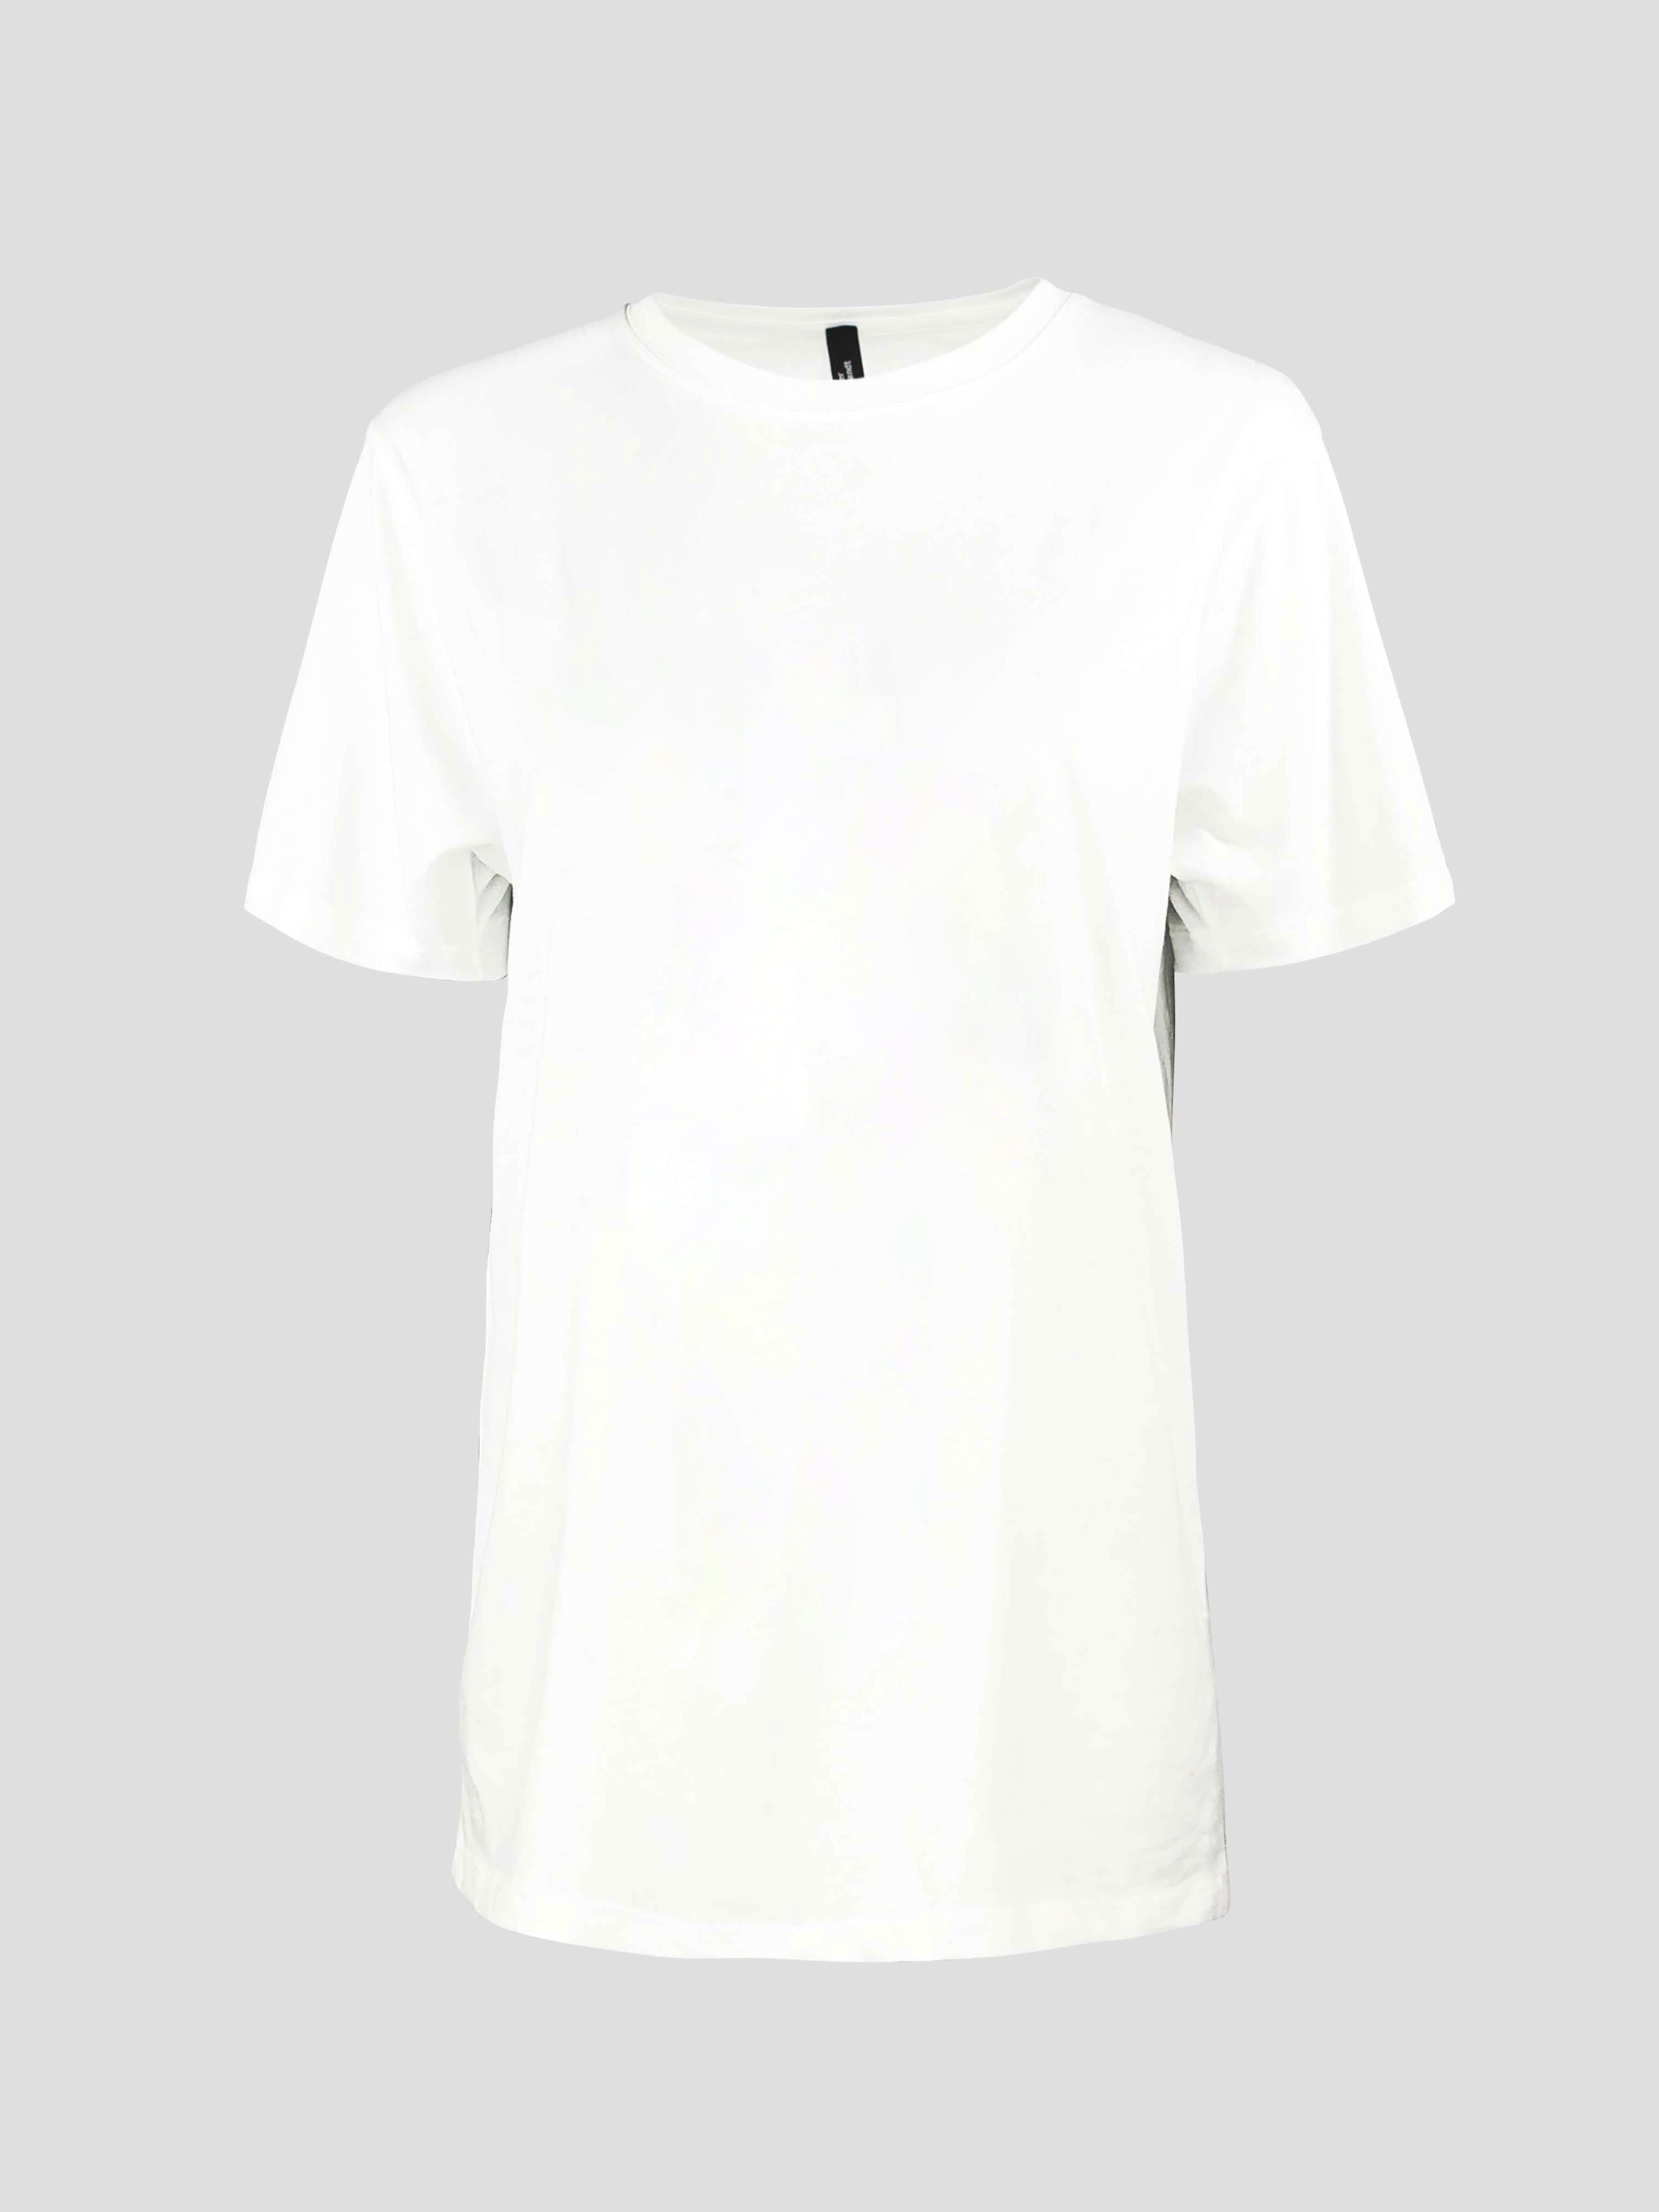 BASIC WHITE - T-Shirt